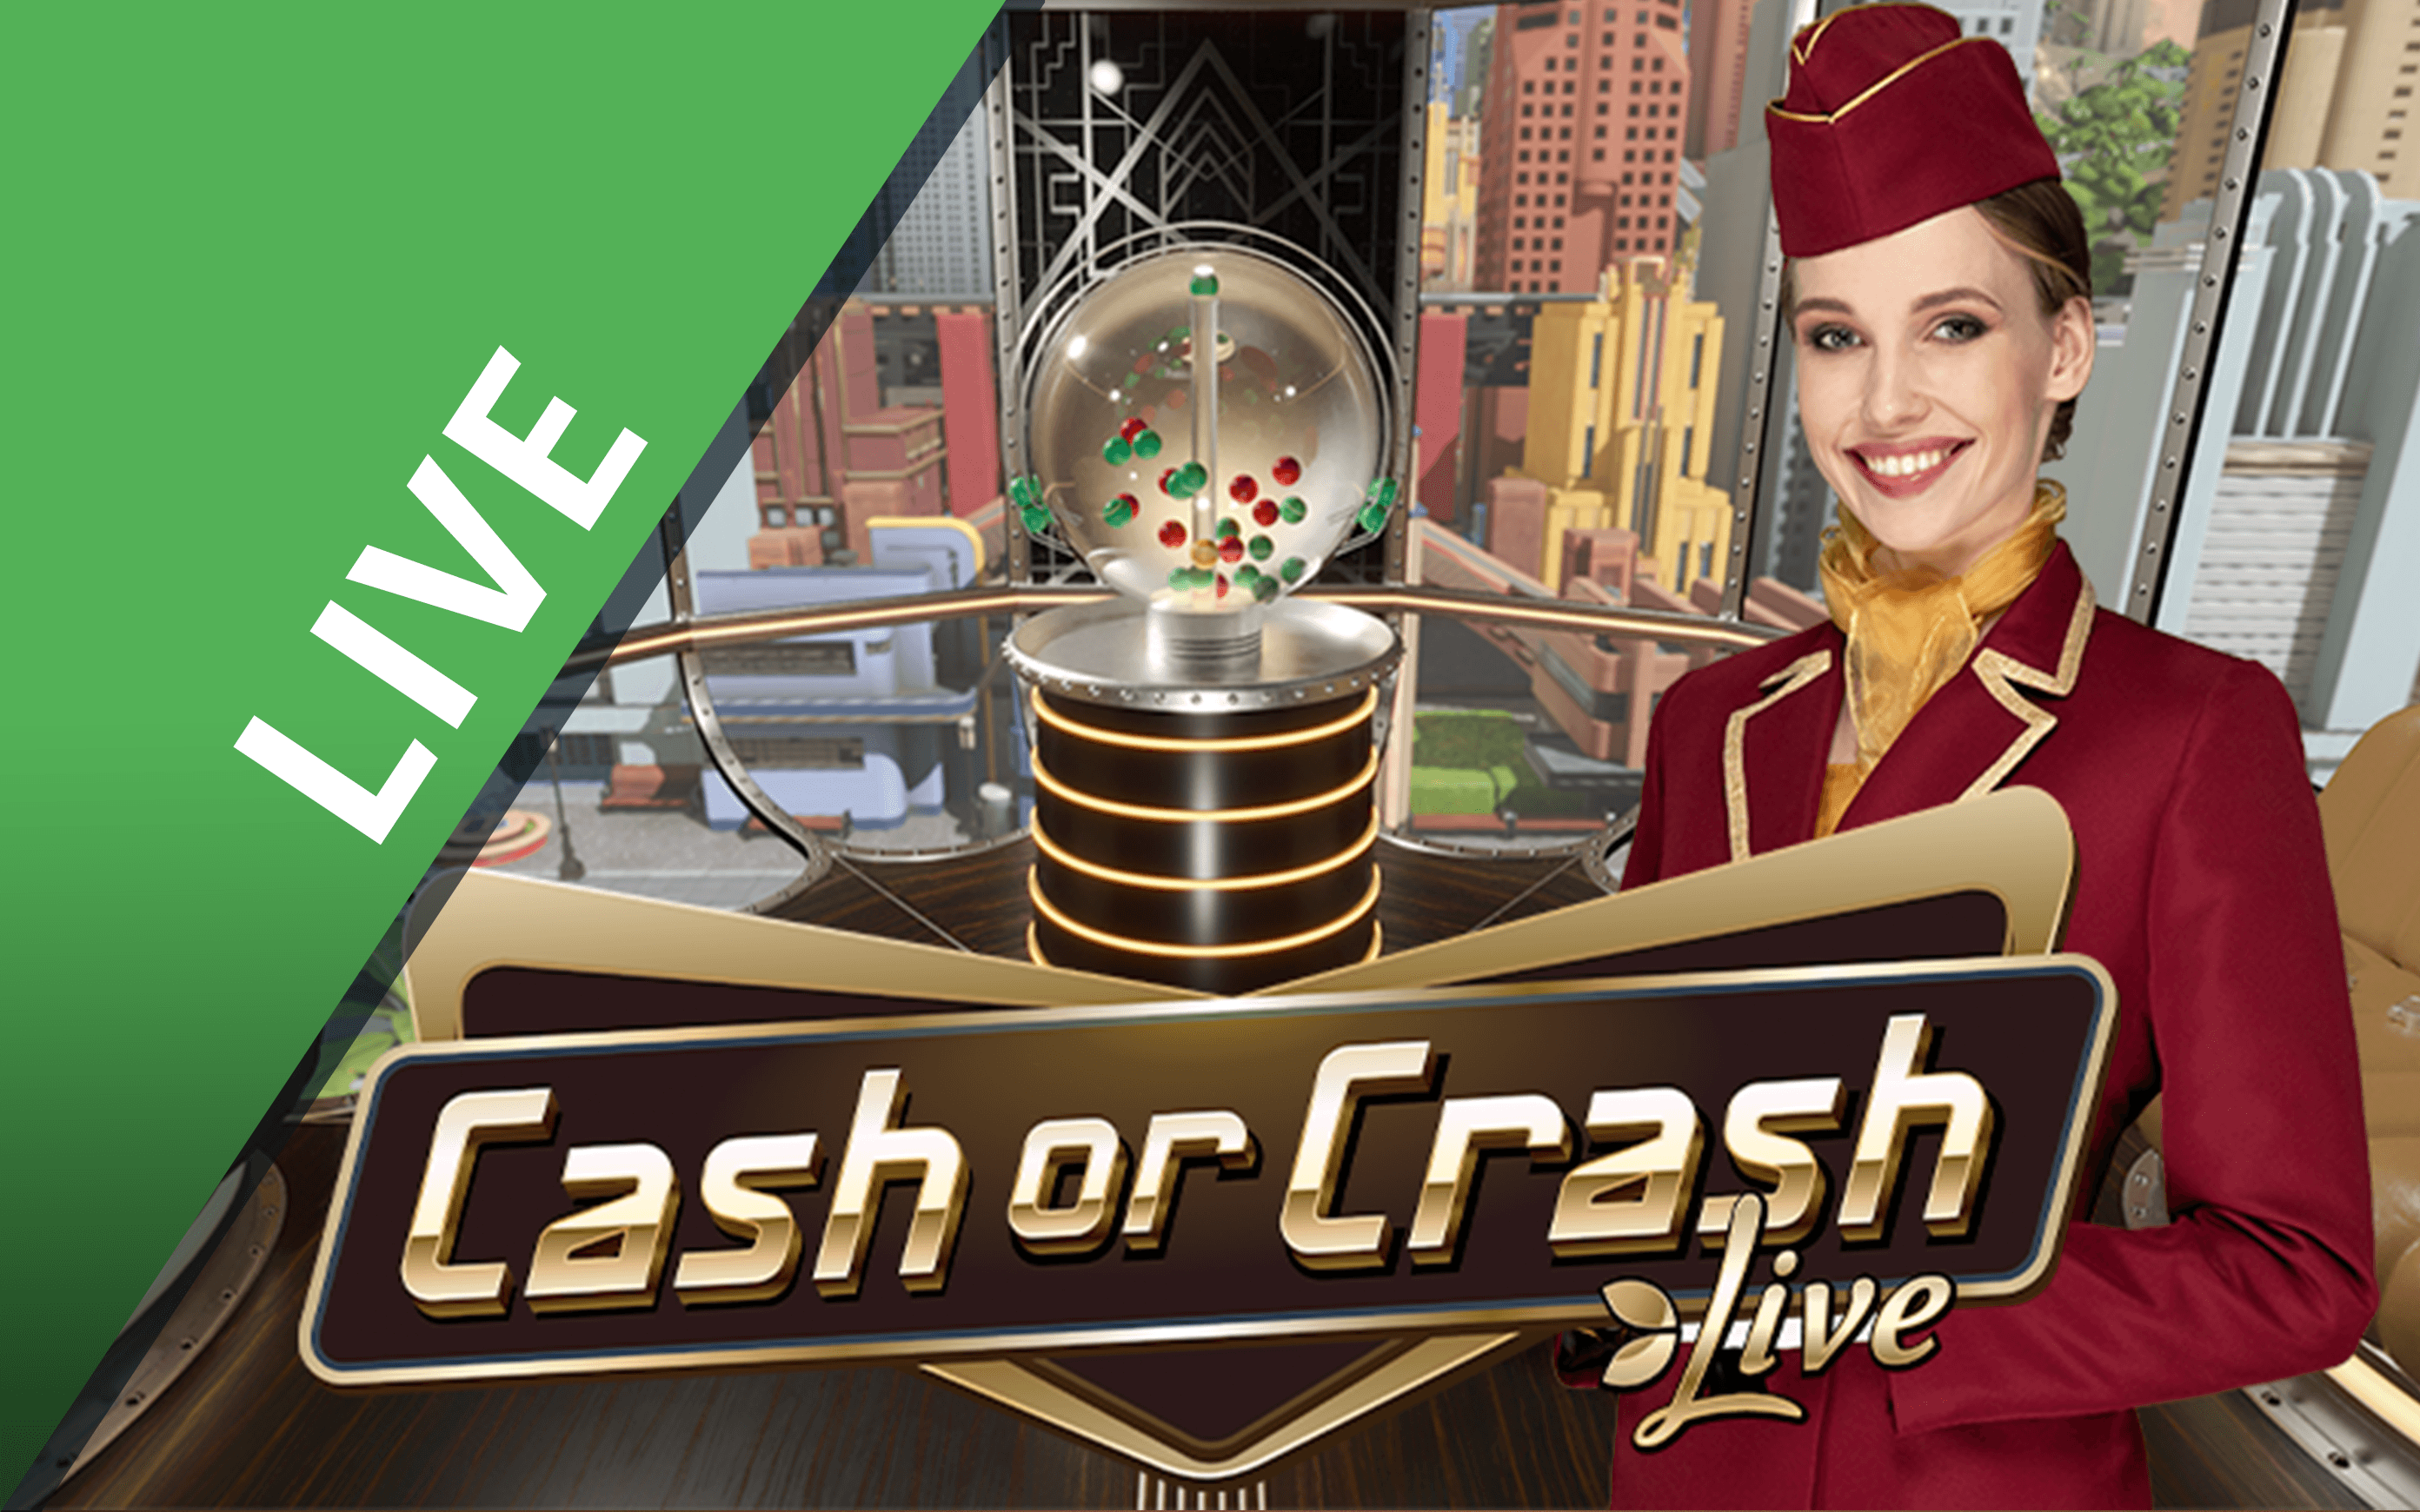 Παίξτε Cash or Crash στο online καζίνο Starcasino.be